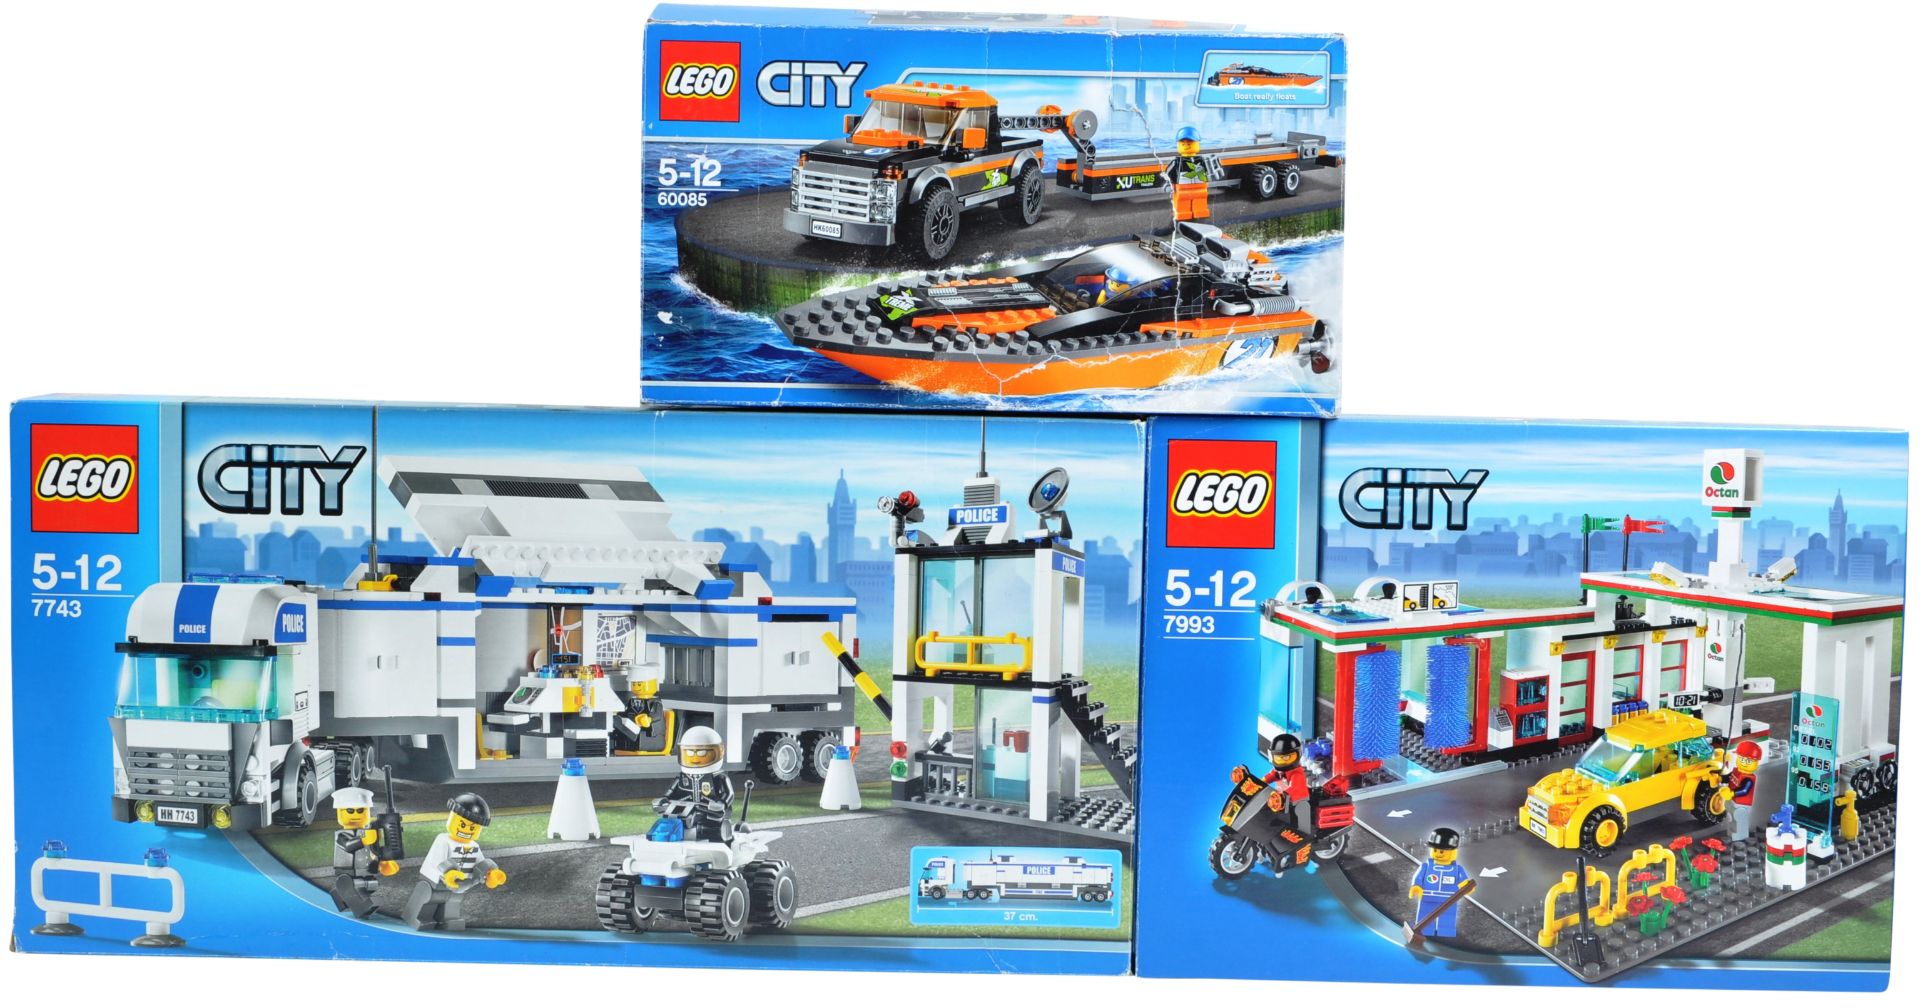 LEGO SETS - LEGO CITY - 7743 / 7993 / 60085